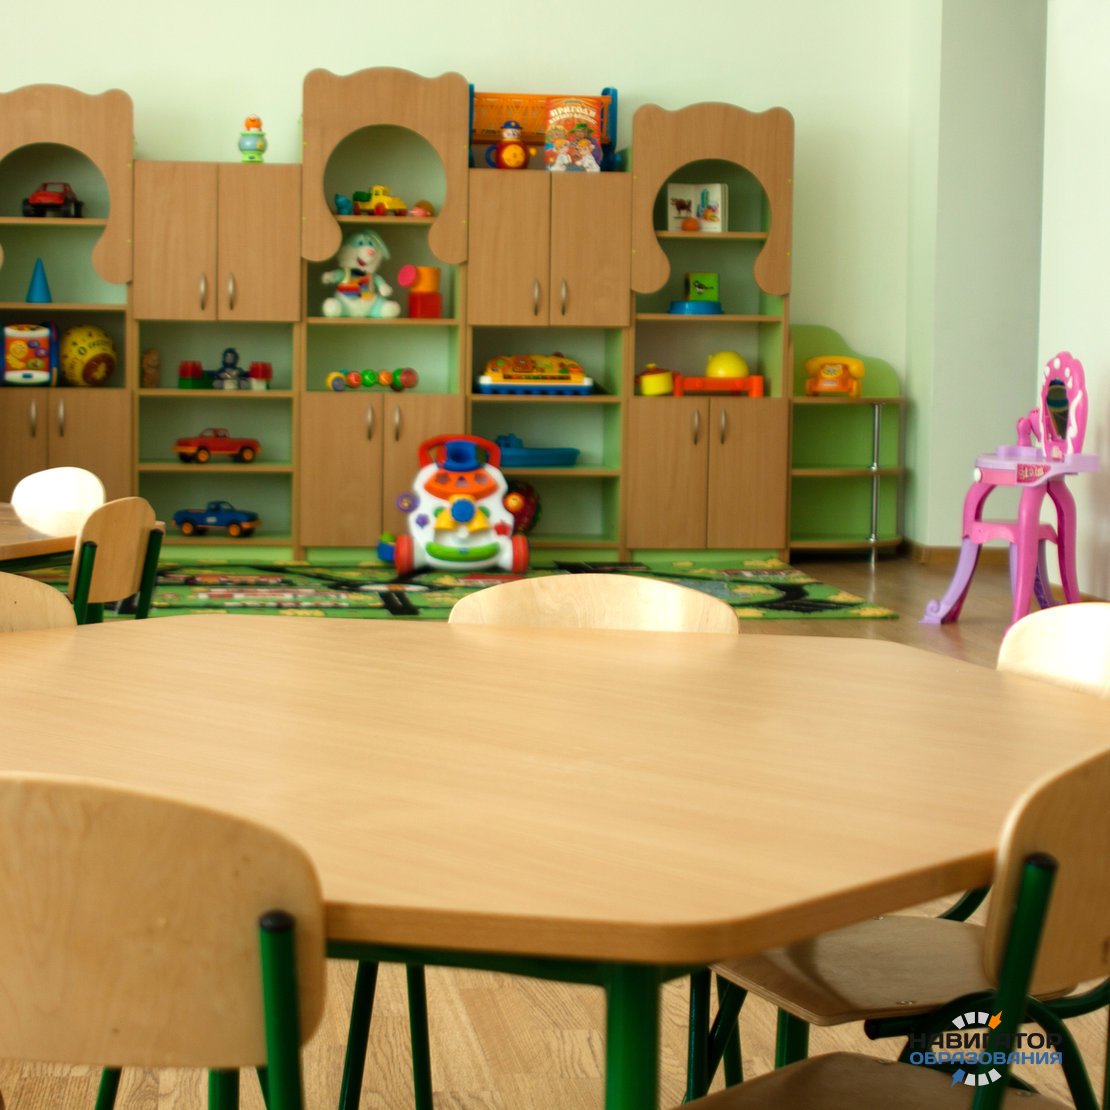 Сайт детской мебели для детских садов. Мебель для детского сада. Мебель для детского садика. Современная мебель для детского сада. Мебель для группы детского сада.